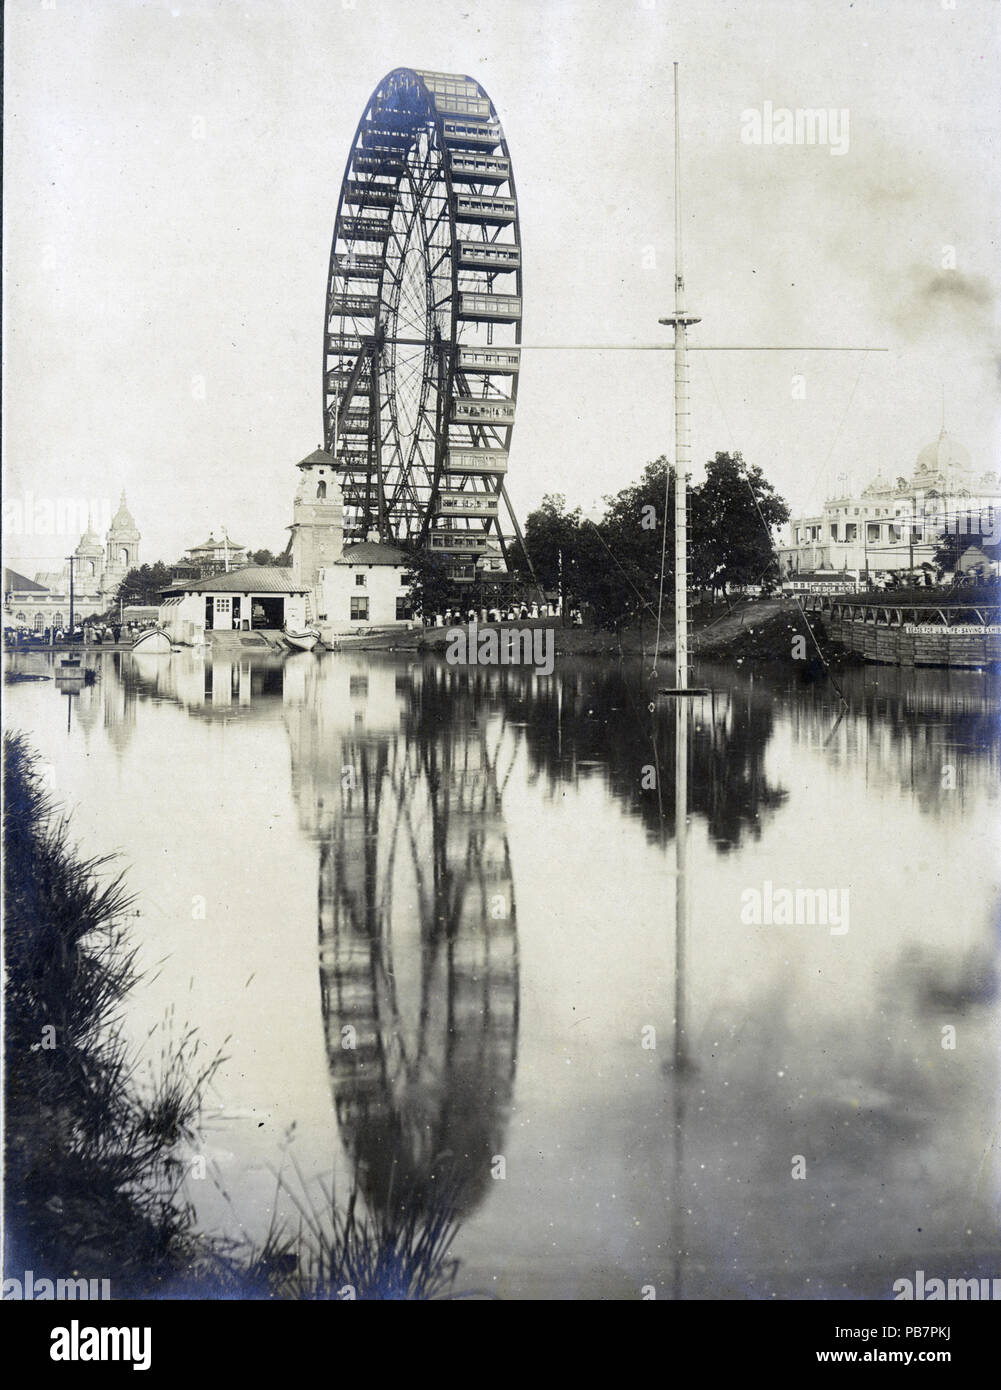 1125 ruota di osservazione e U.S.A. Per salvare la vita a stazione 1904 della fiera del mondo. (Ruota panoramica Ferris) Foto Stock